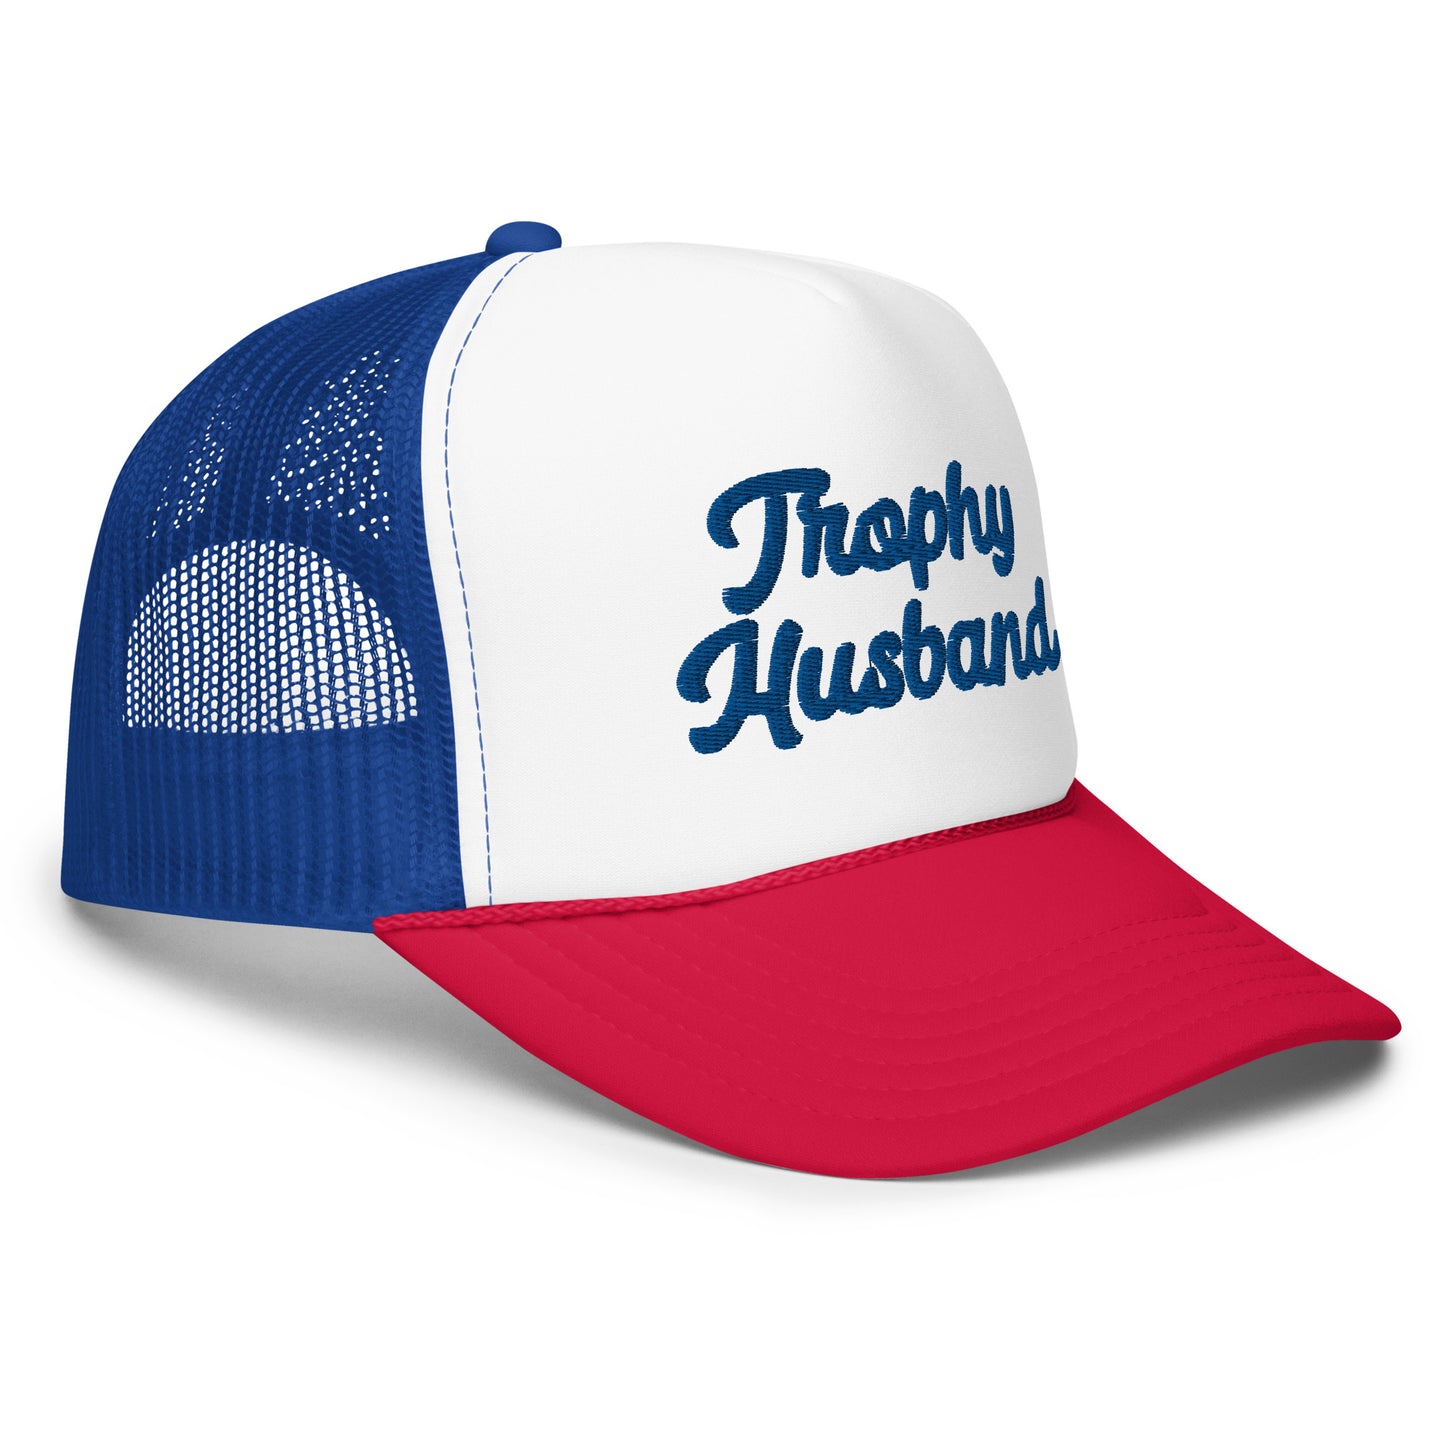 Trophy Husband trucker hat